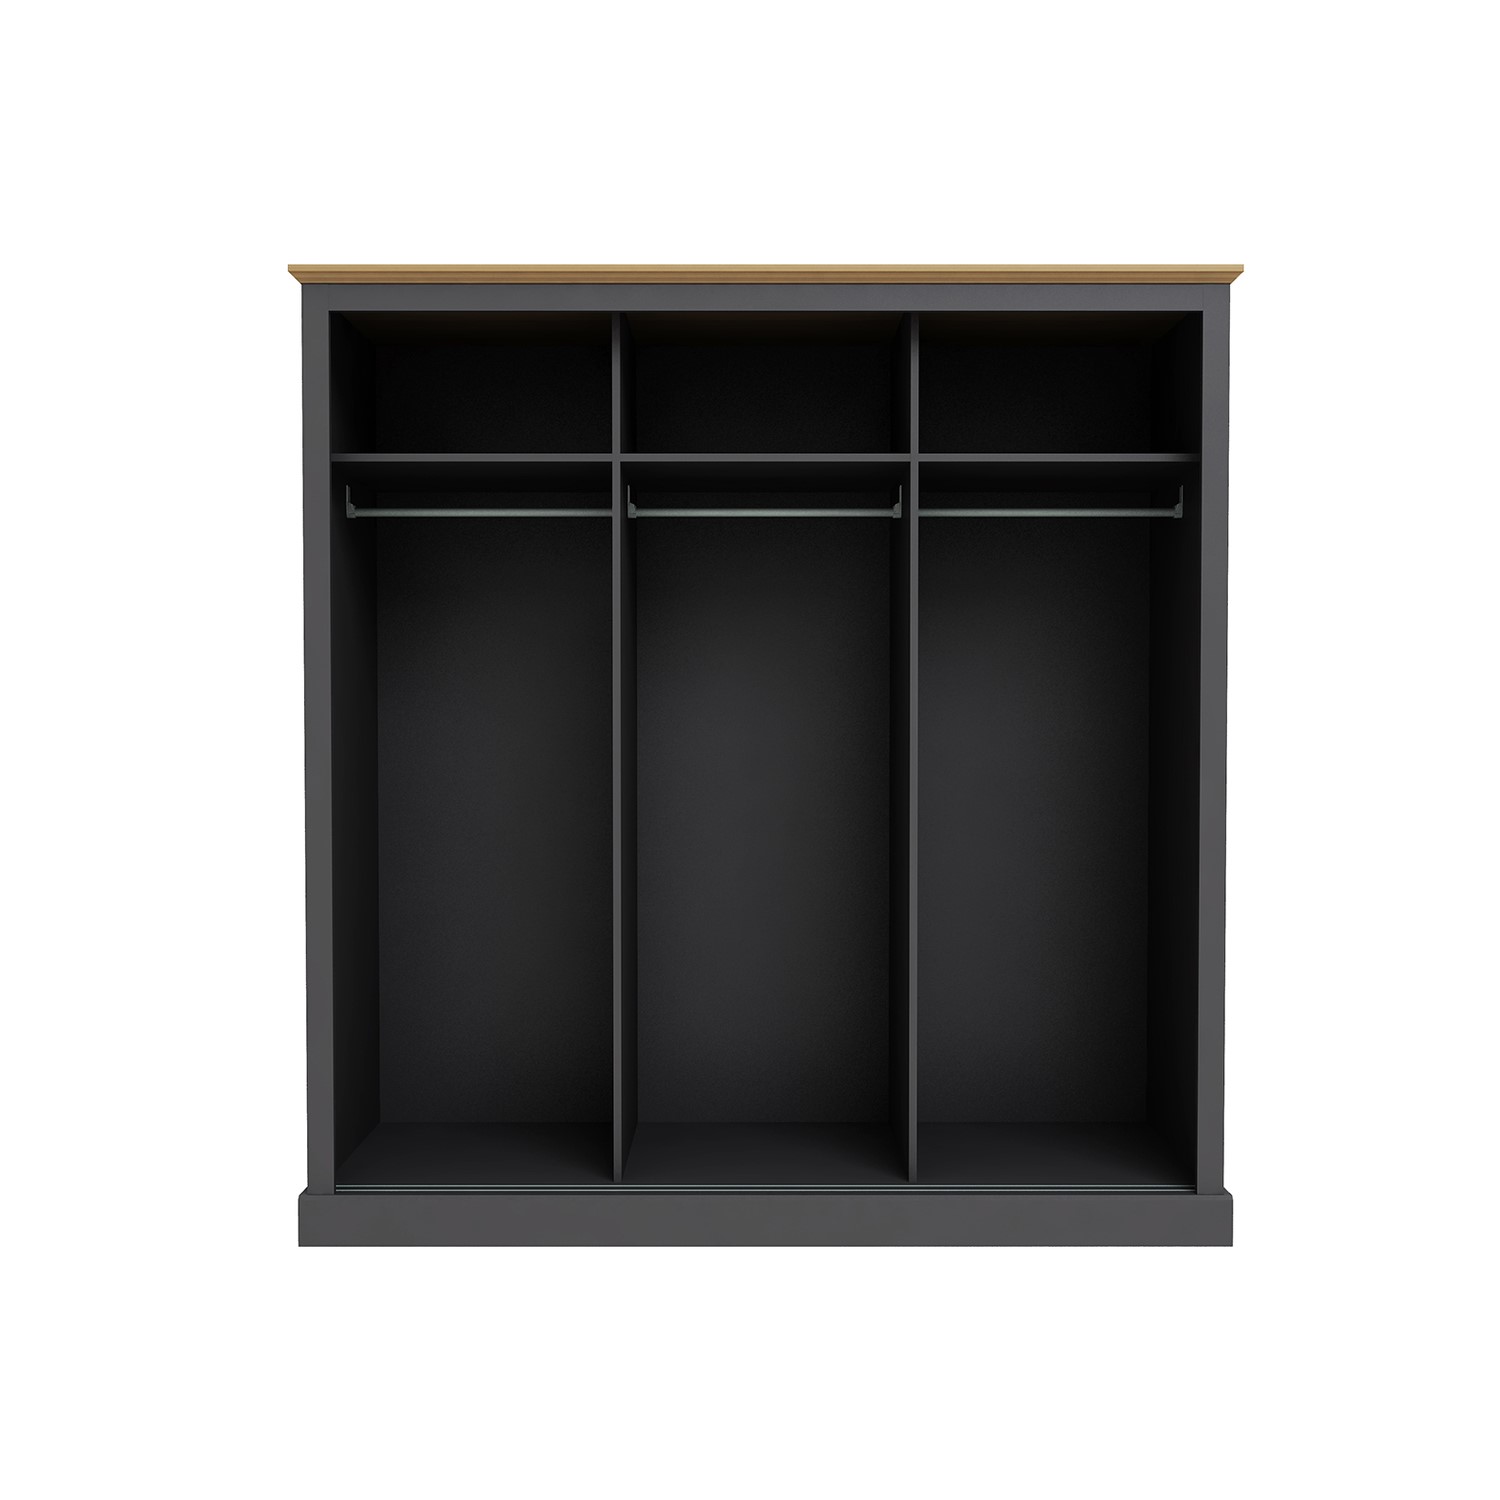 Read more about Dark grey and oak 3 door sliding mirrored wardrobe devon lpd